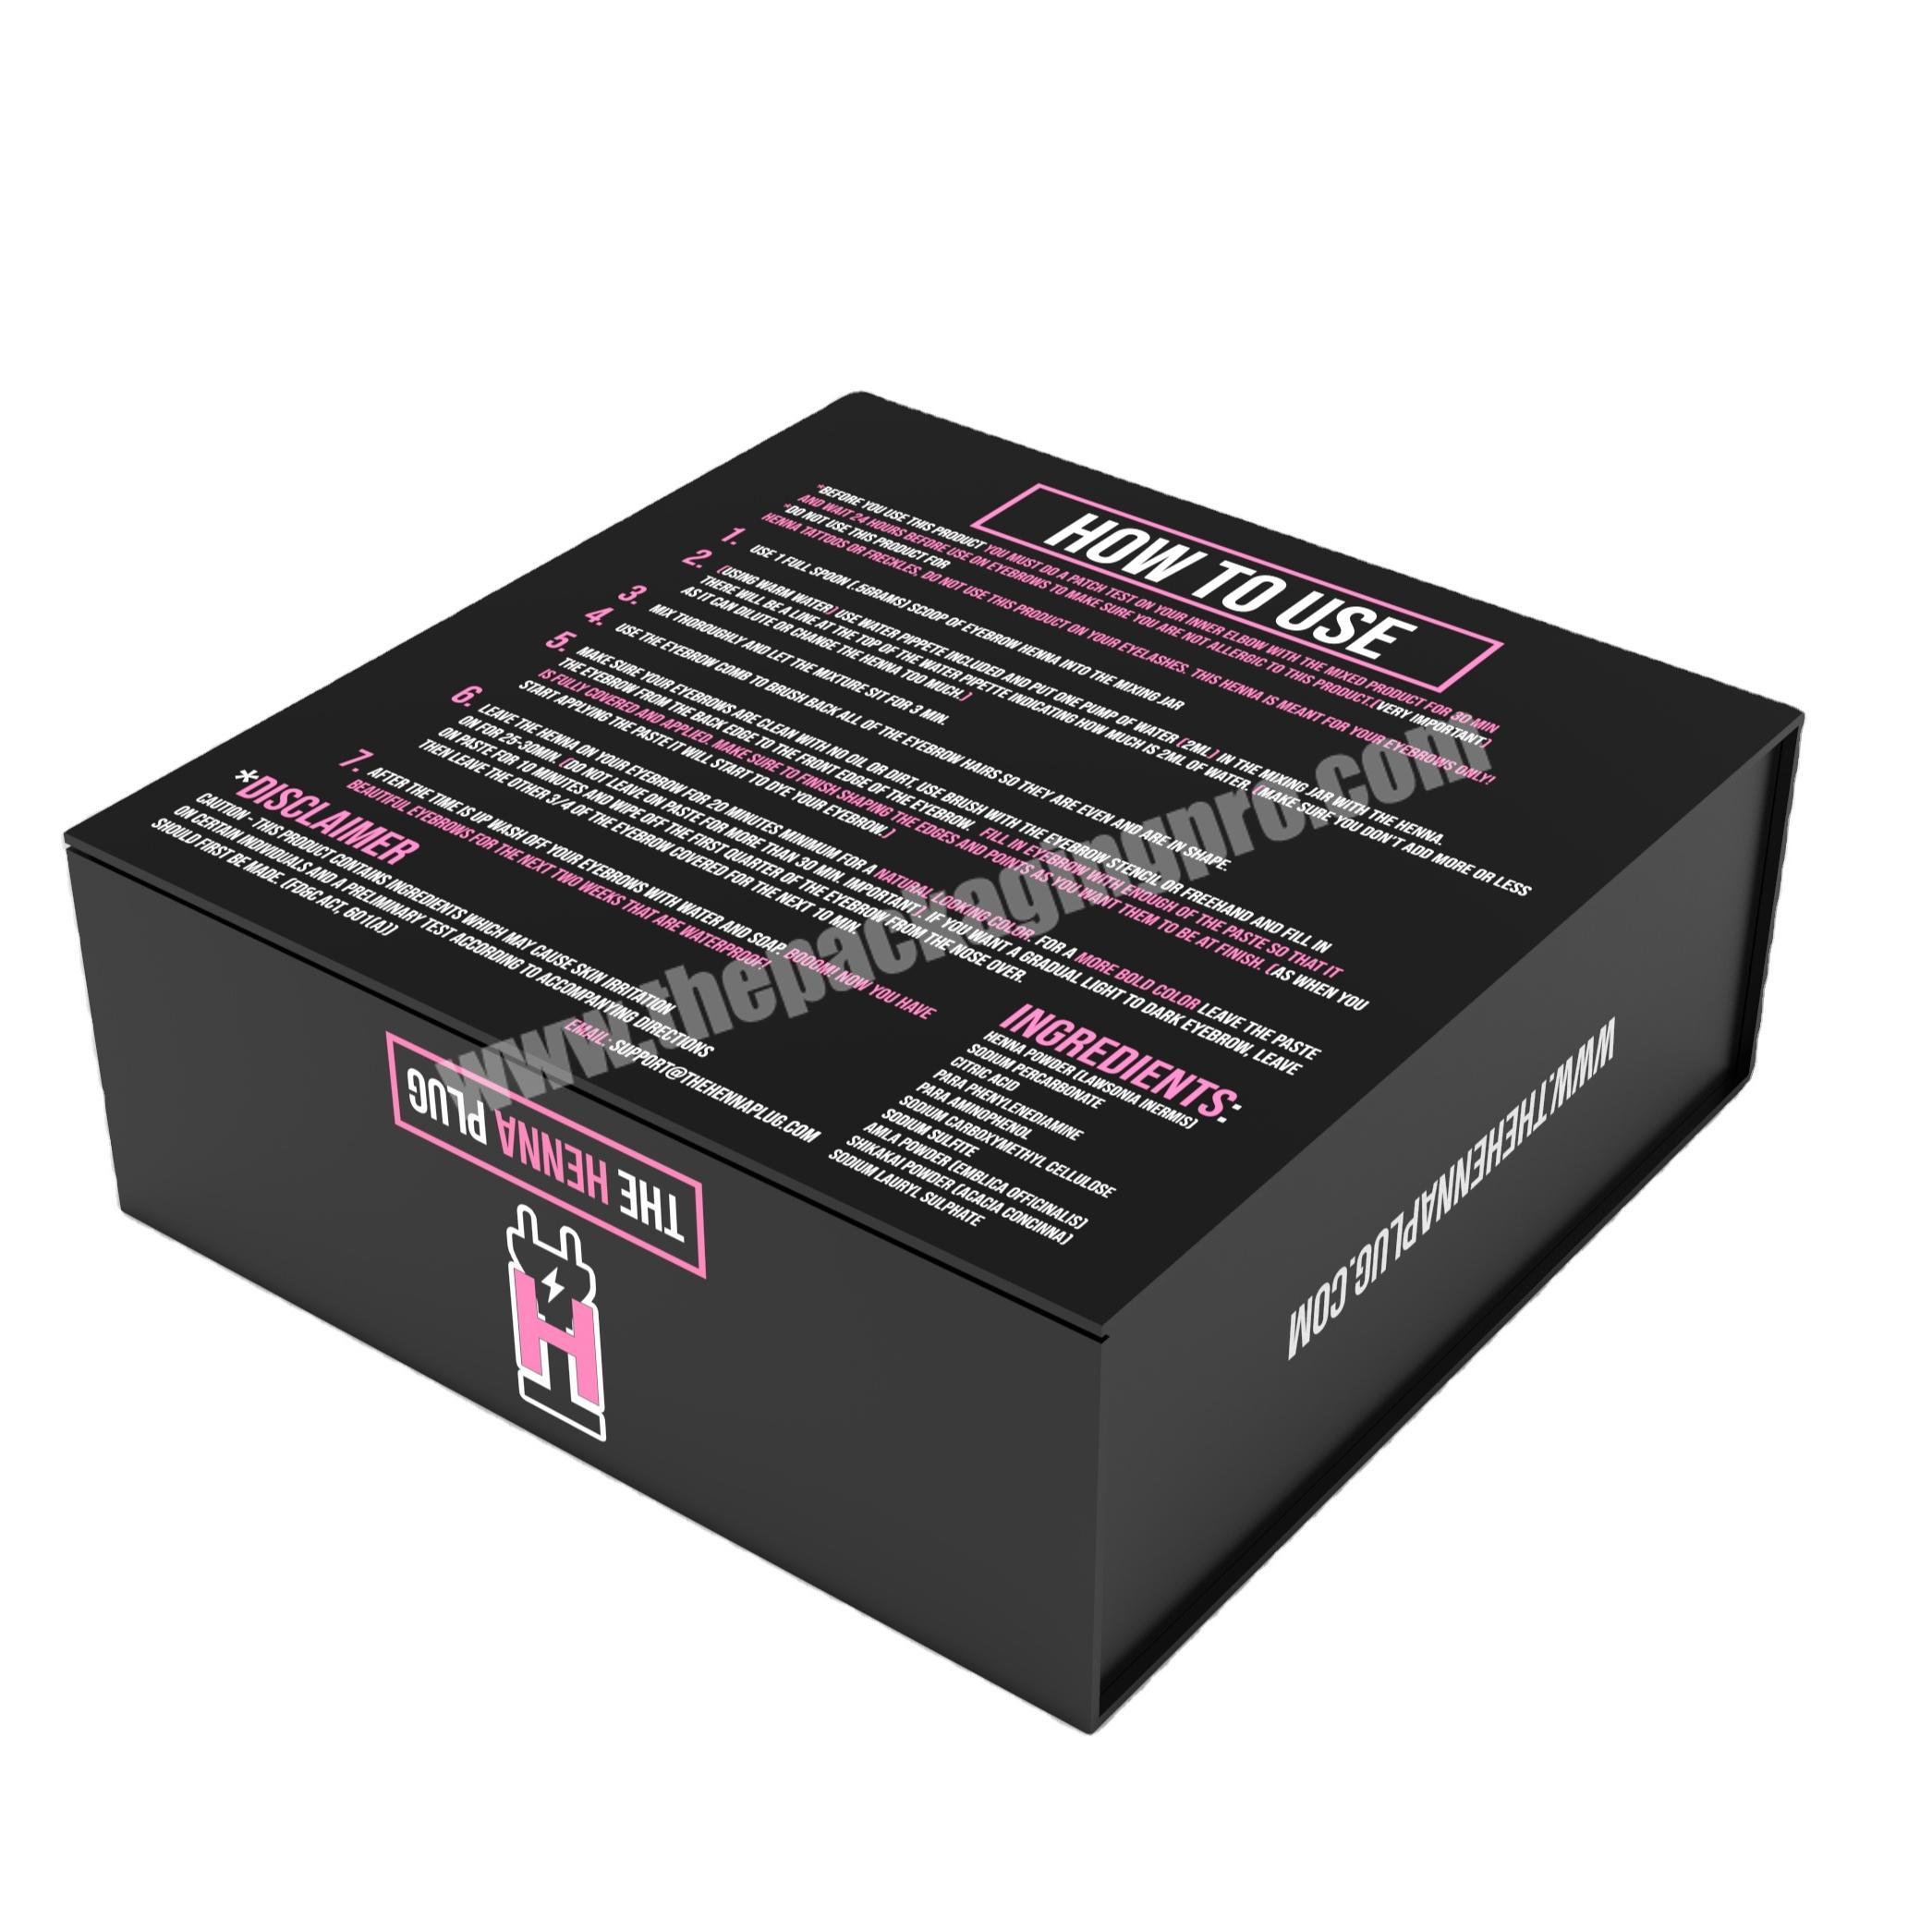 Luxury custom printed  black magnetic closure flap elegant paper packaging gift boxes